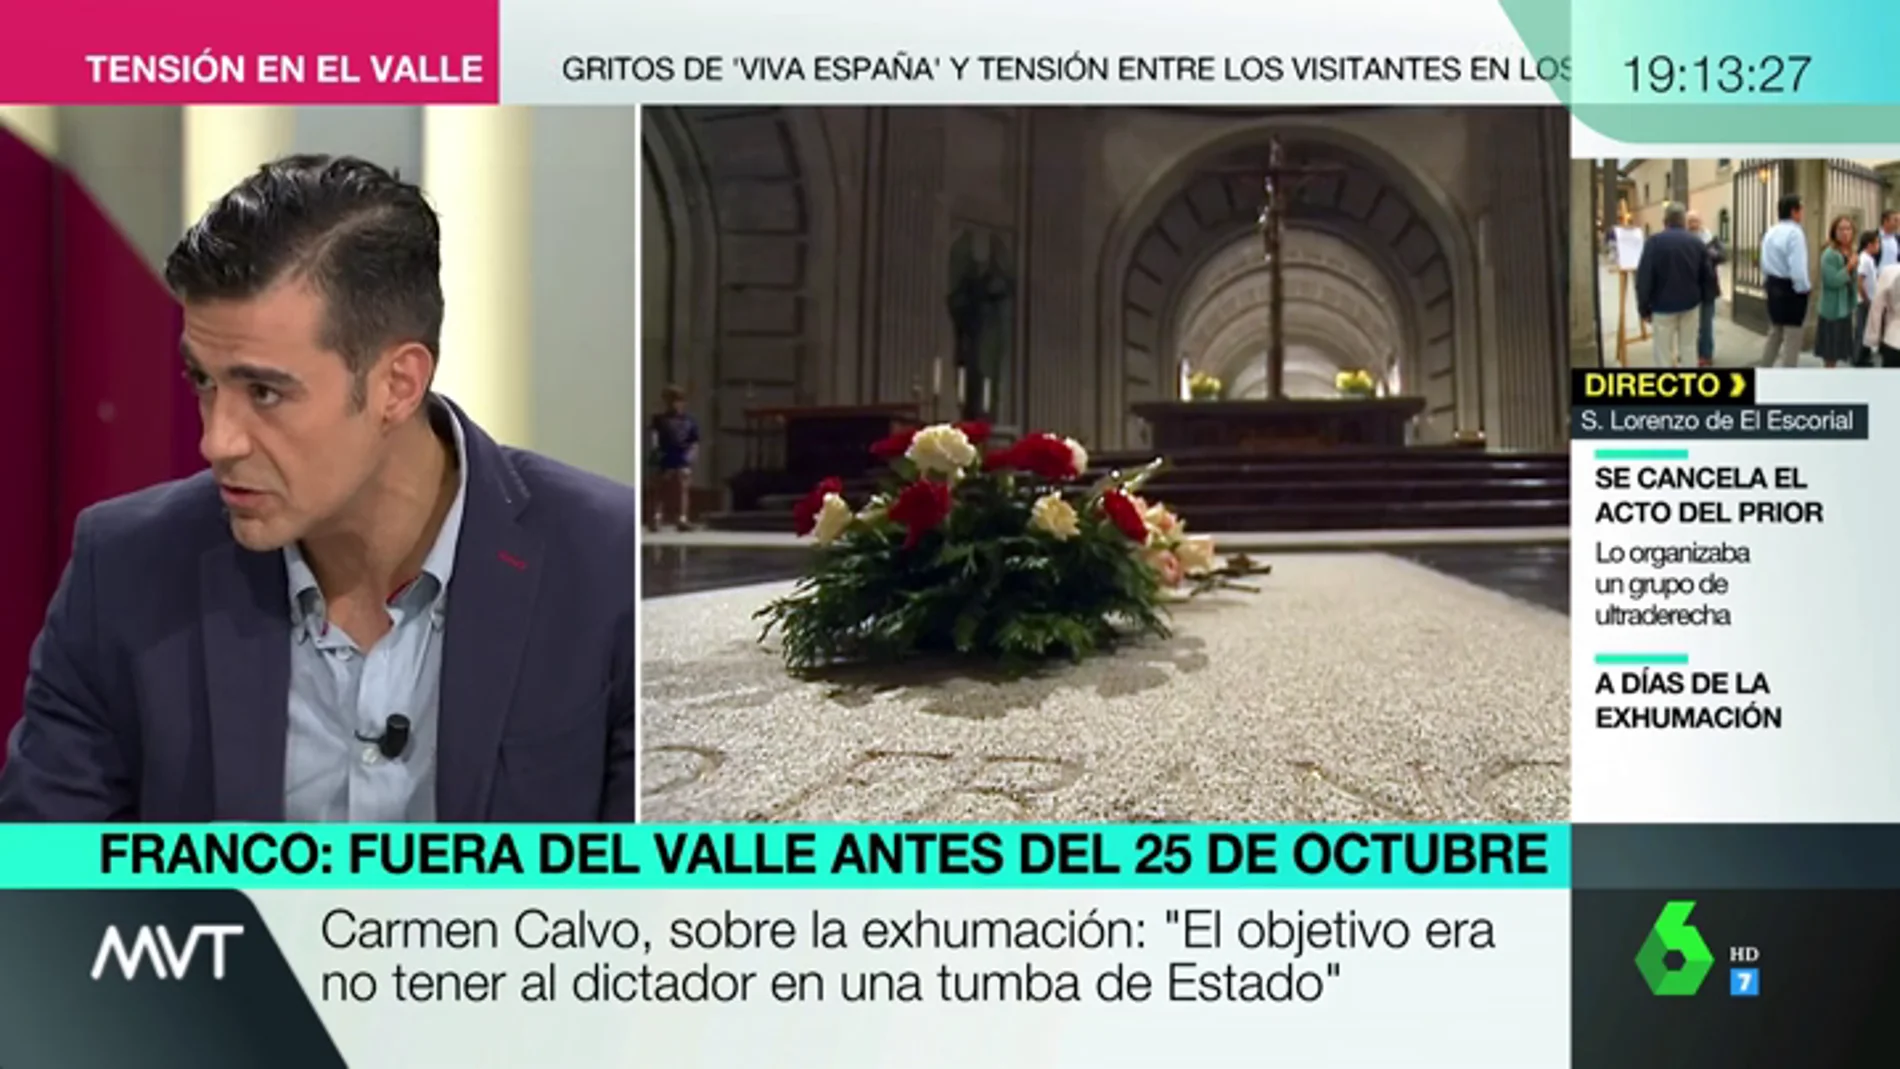 José Beltrán: "Hemos visto intentos de Carmen Calvo de presentar a la Iglesia como un enemigo a la democracia"